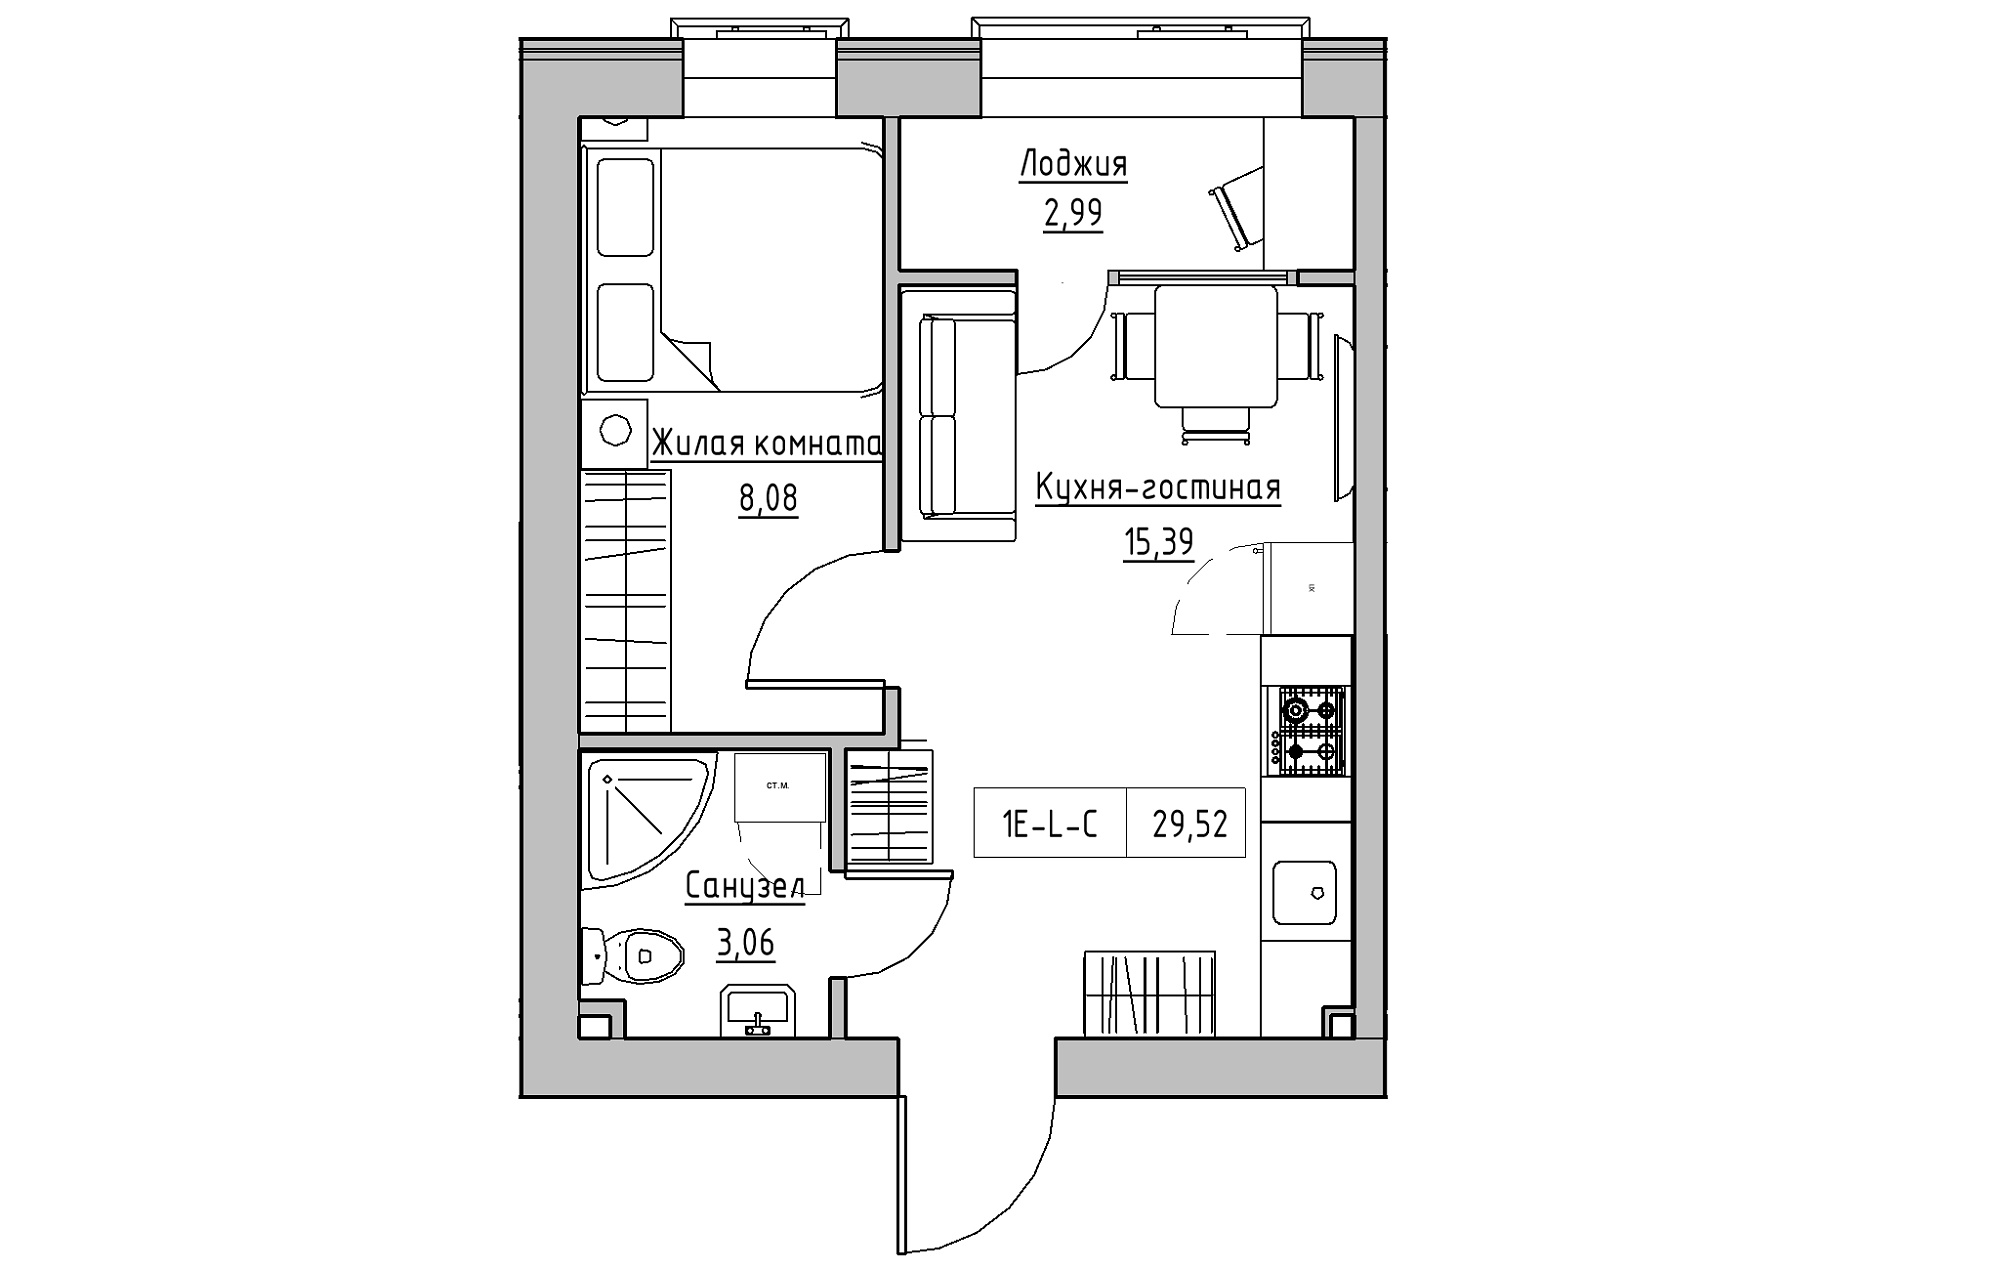 Планування 1-к квартира площею 29.52м2, KS-018-04/0006.